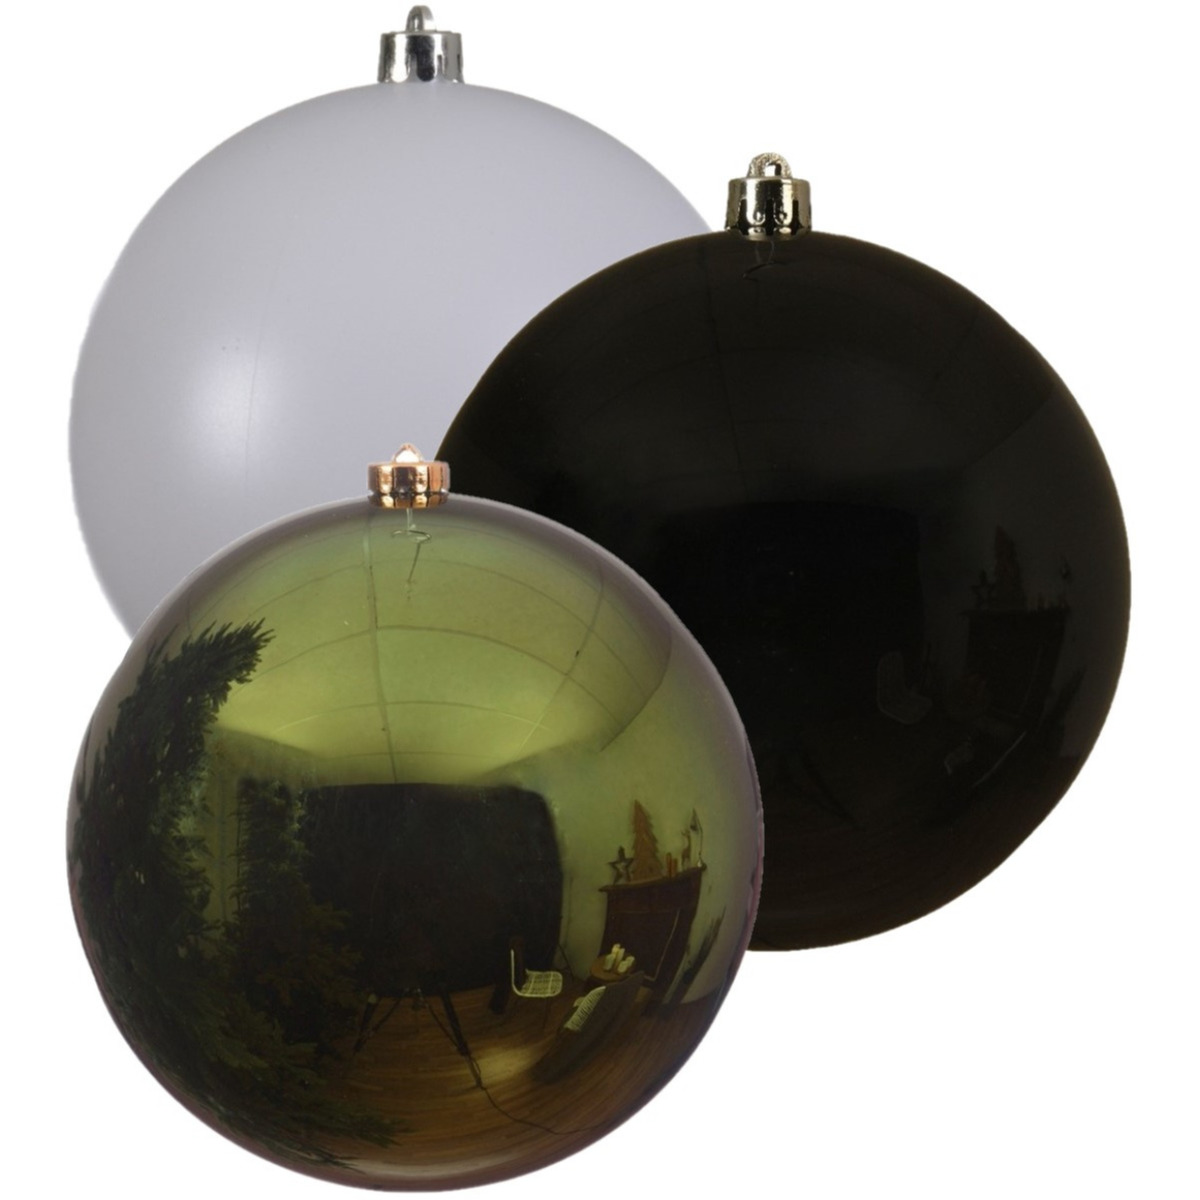 Kerstversieringen set van 6x grote kunststof kerstballen groen-wit-zwart 14 cm glans - 2x per kleur